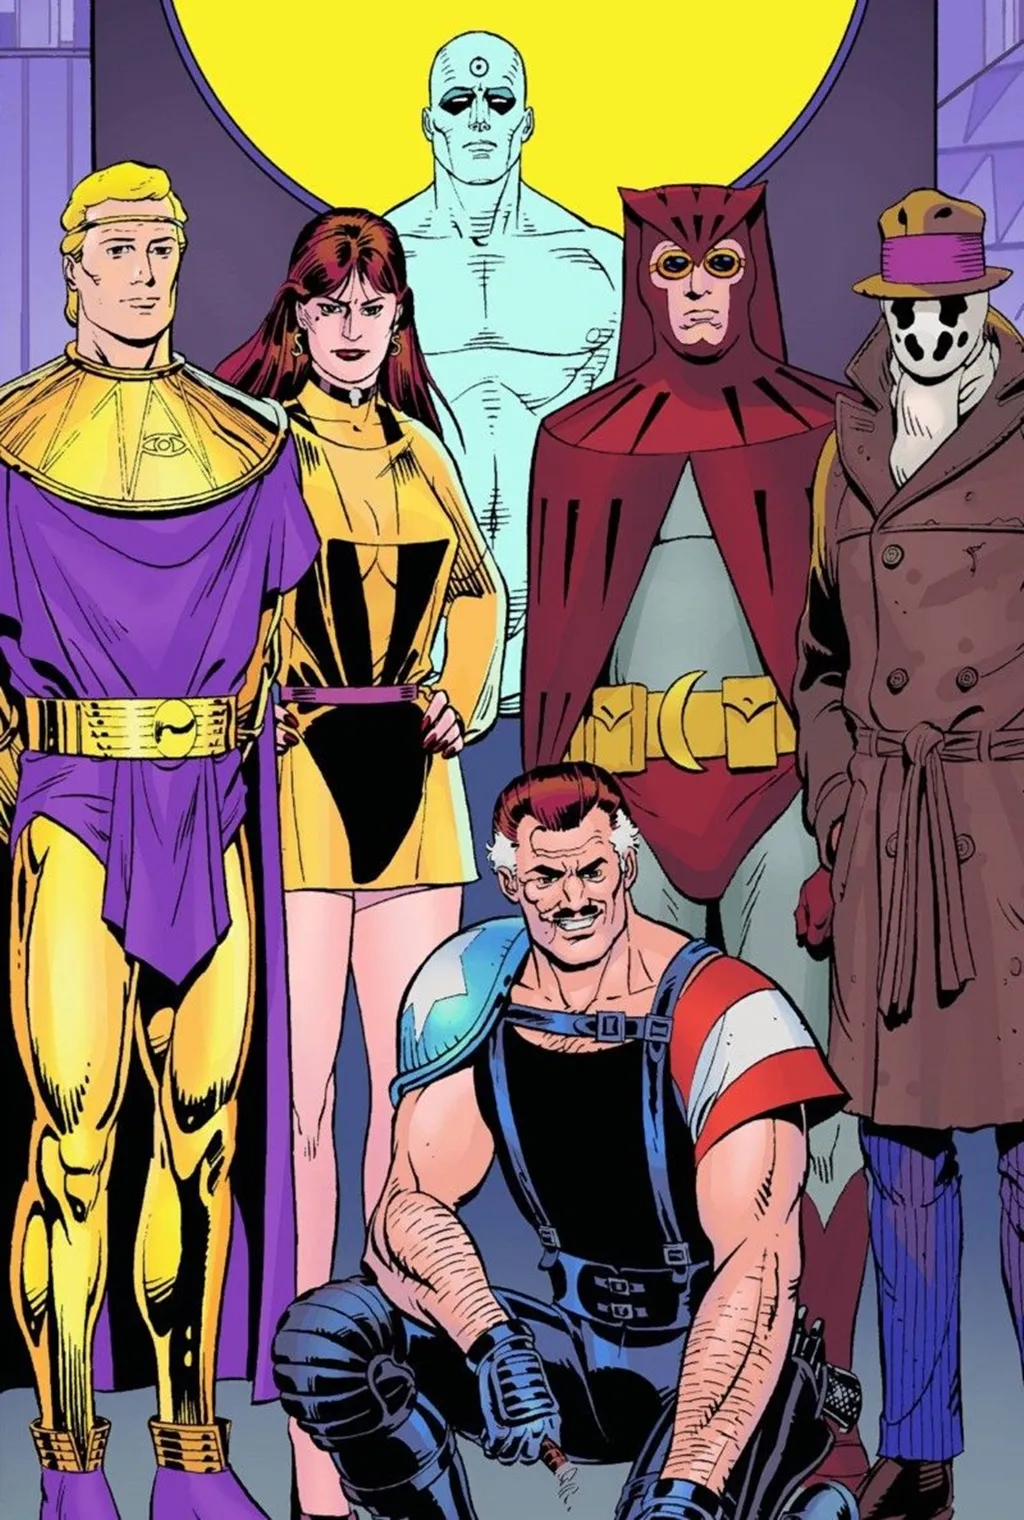 Watchmen desconstruiu o conceito do heroísmo do Homem-Aranha do John Romita Sr. (Imagem: Reprodução/DC Comics)